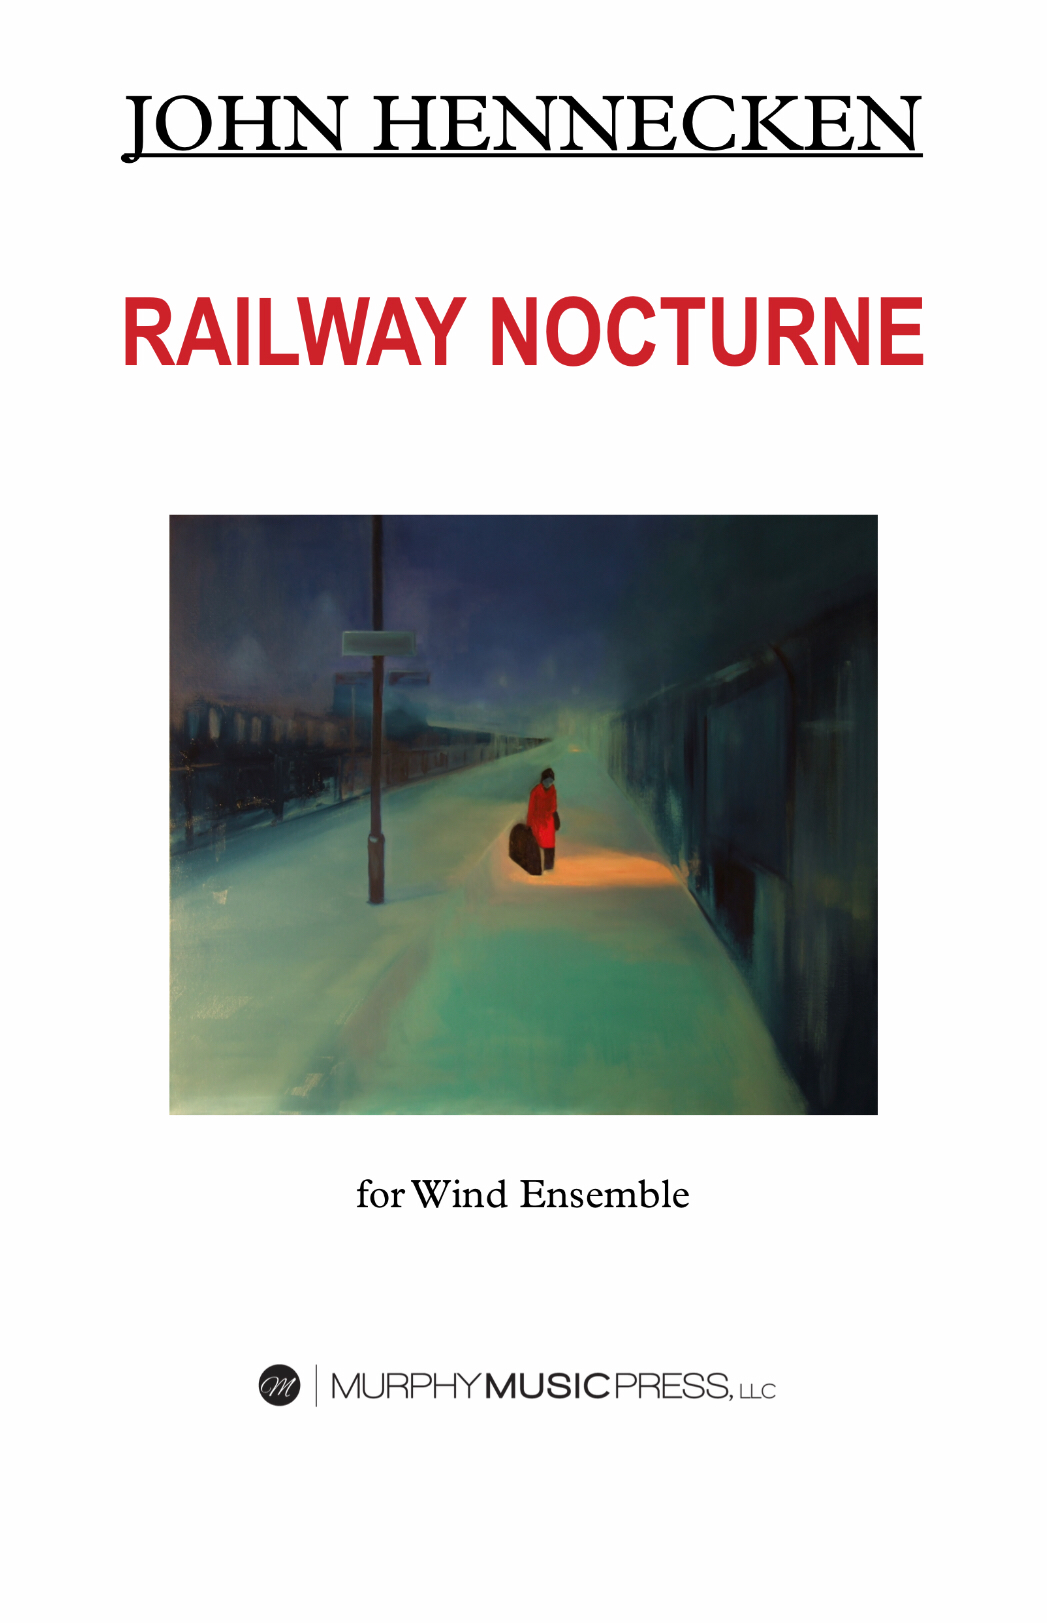 Railway Nocturne by John Hennecken